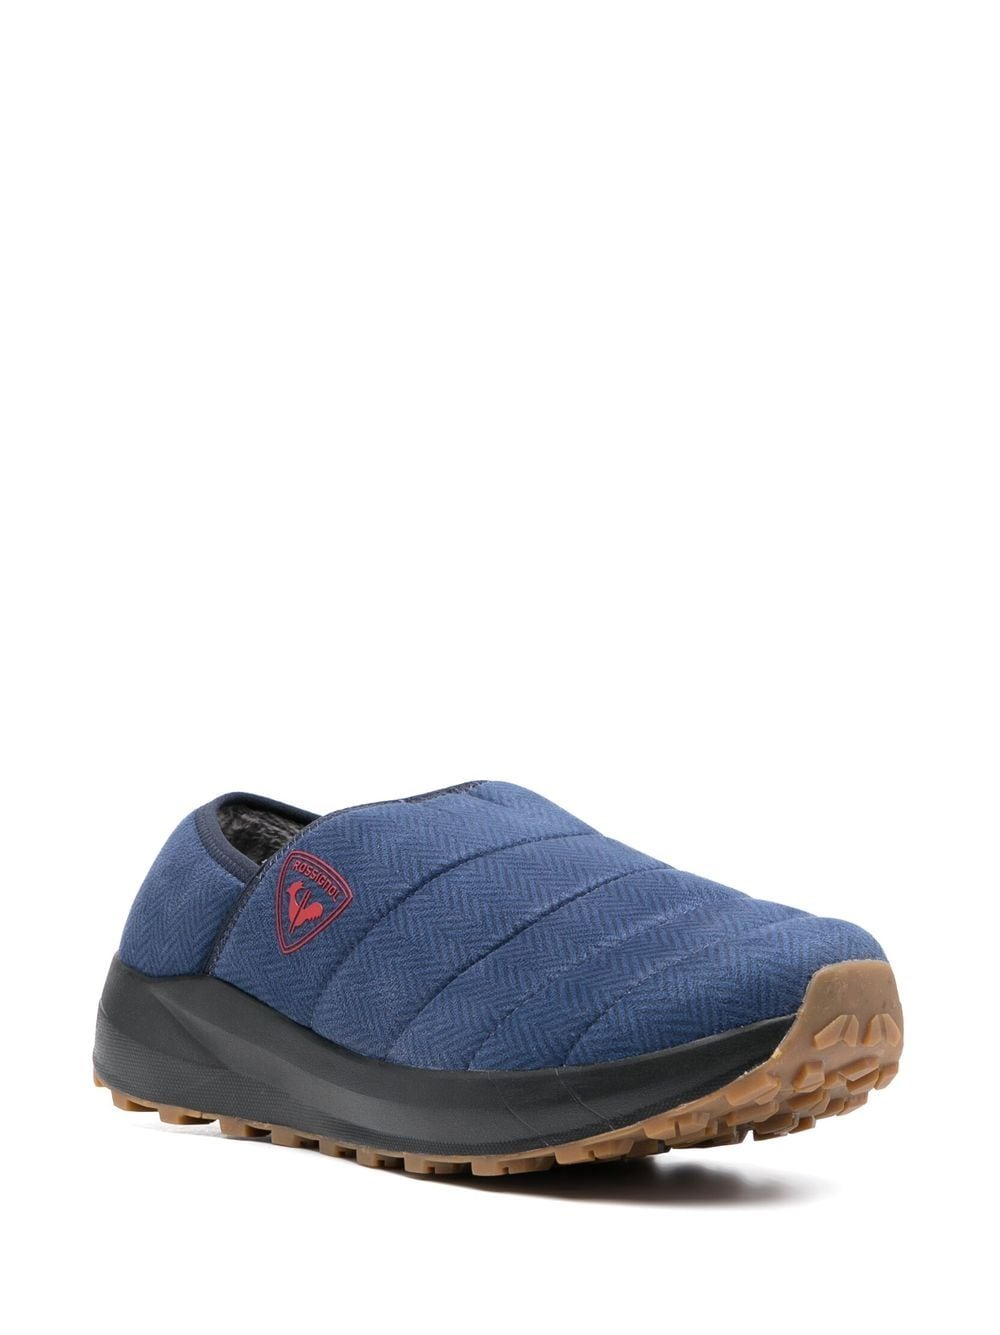 Rossignol Chalet slippers - Blauw